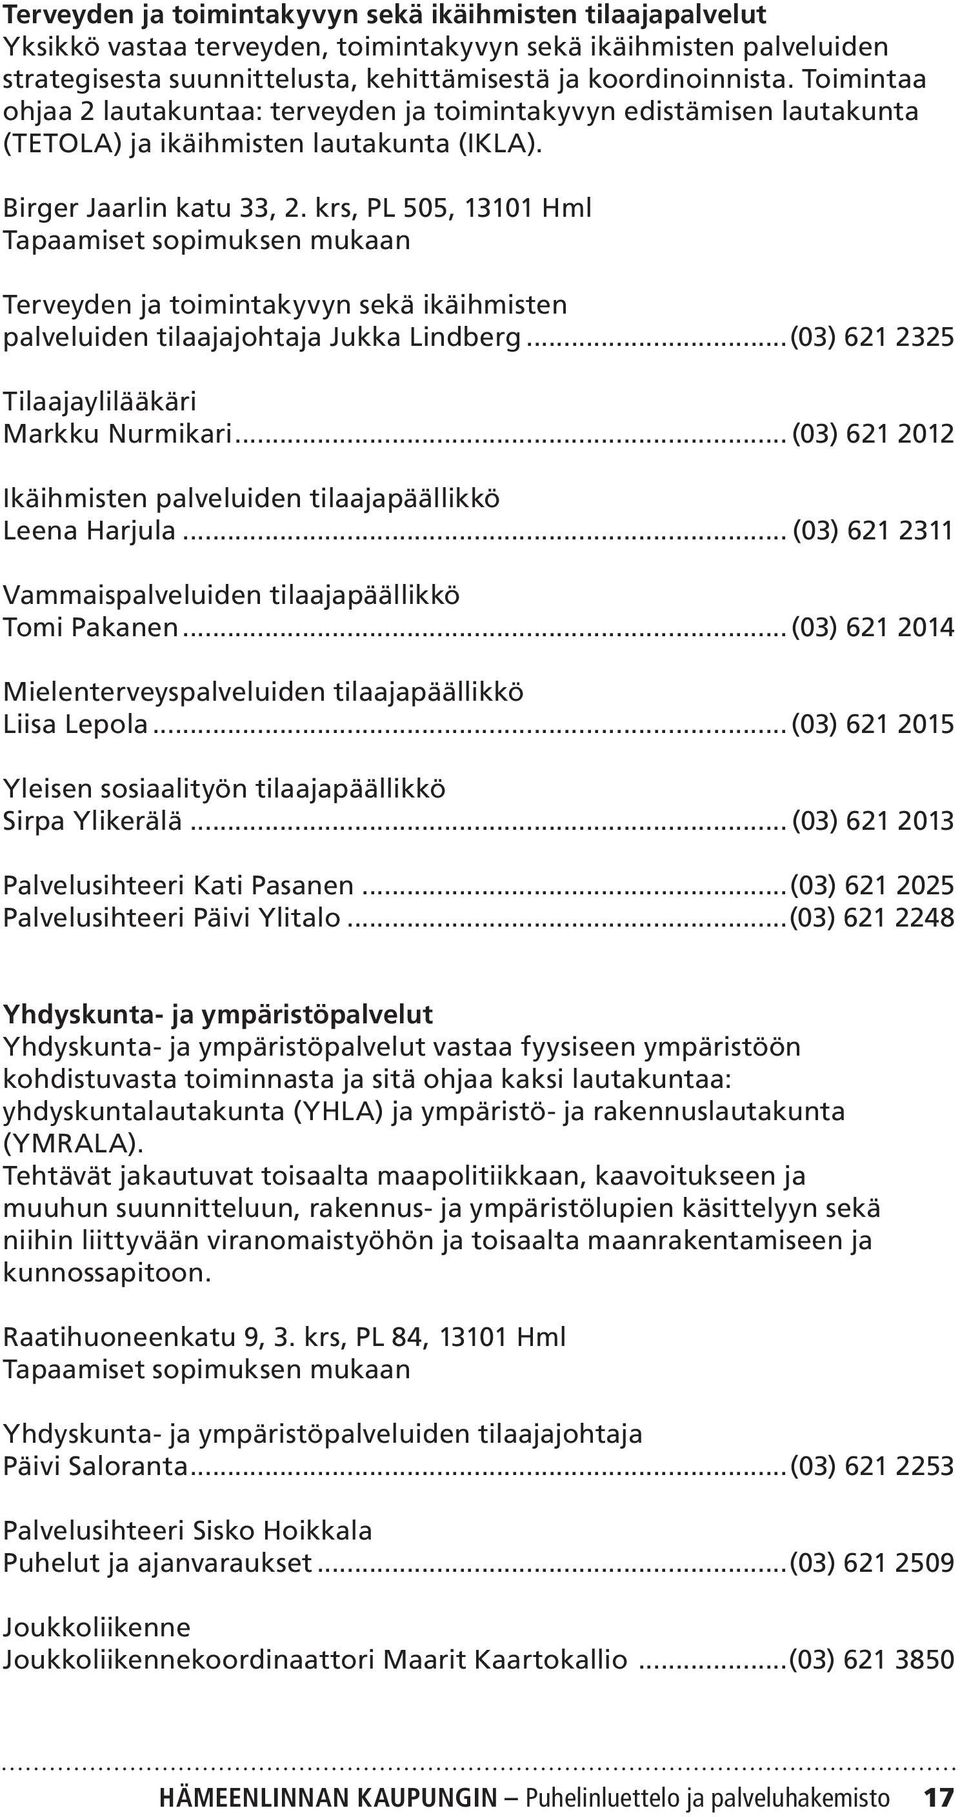 krs, PL 505, 13101 Hml Tapaamiset sopimuksen mukaan Terveyden ja toimintakyvyn sekä ikäihmisten palveluiden tilaajajohtaja Jukka Lindberg...(03) 621 2325 Tilaajaylilääkäri Markku Nurmikari.